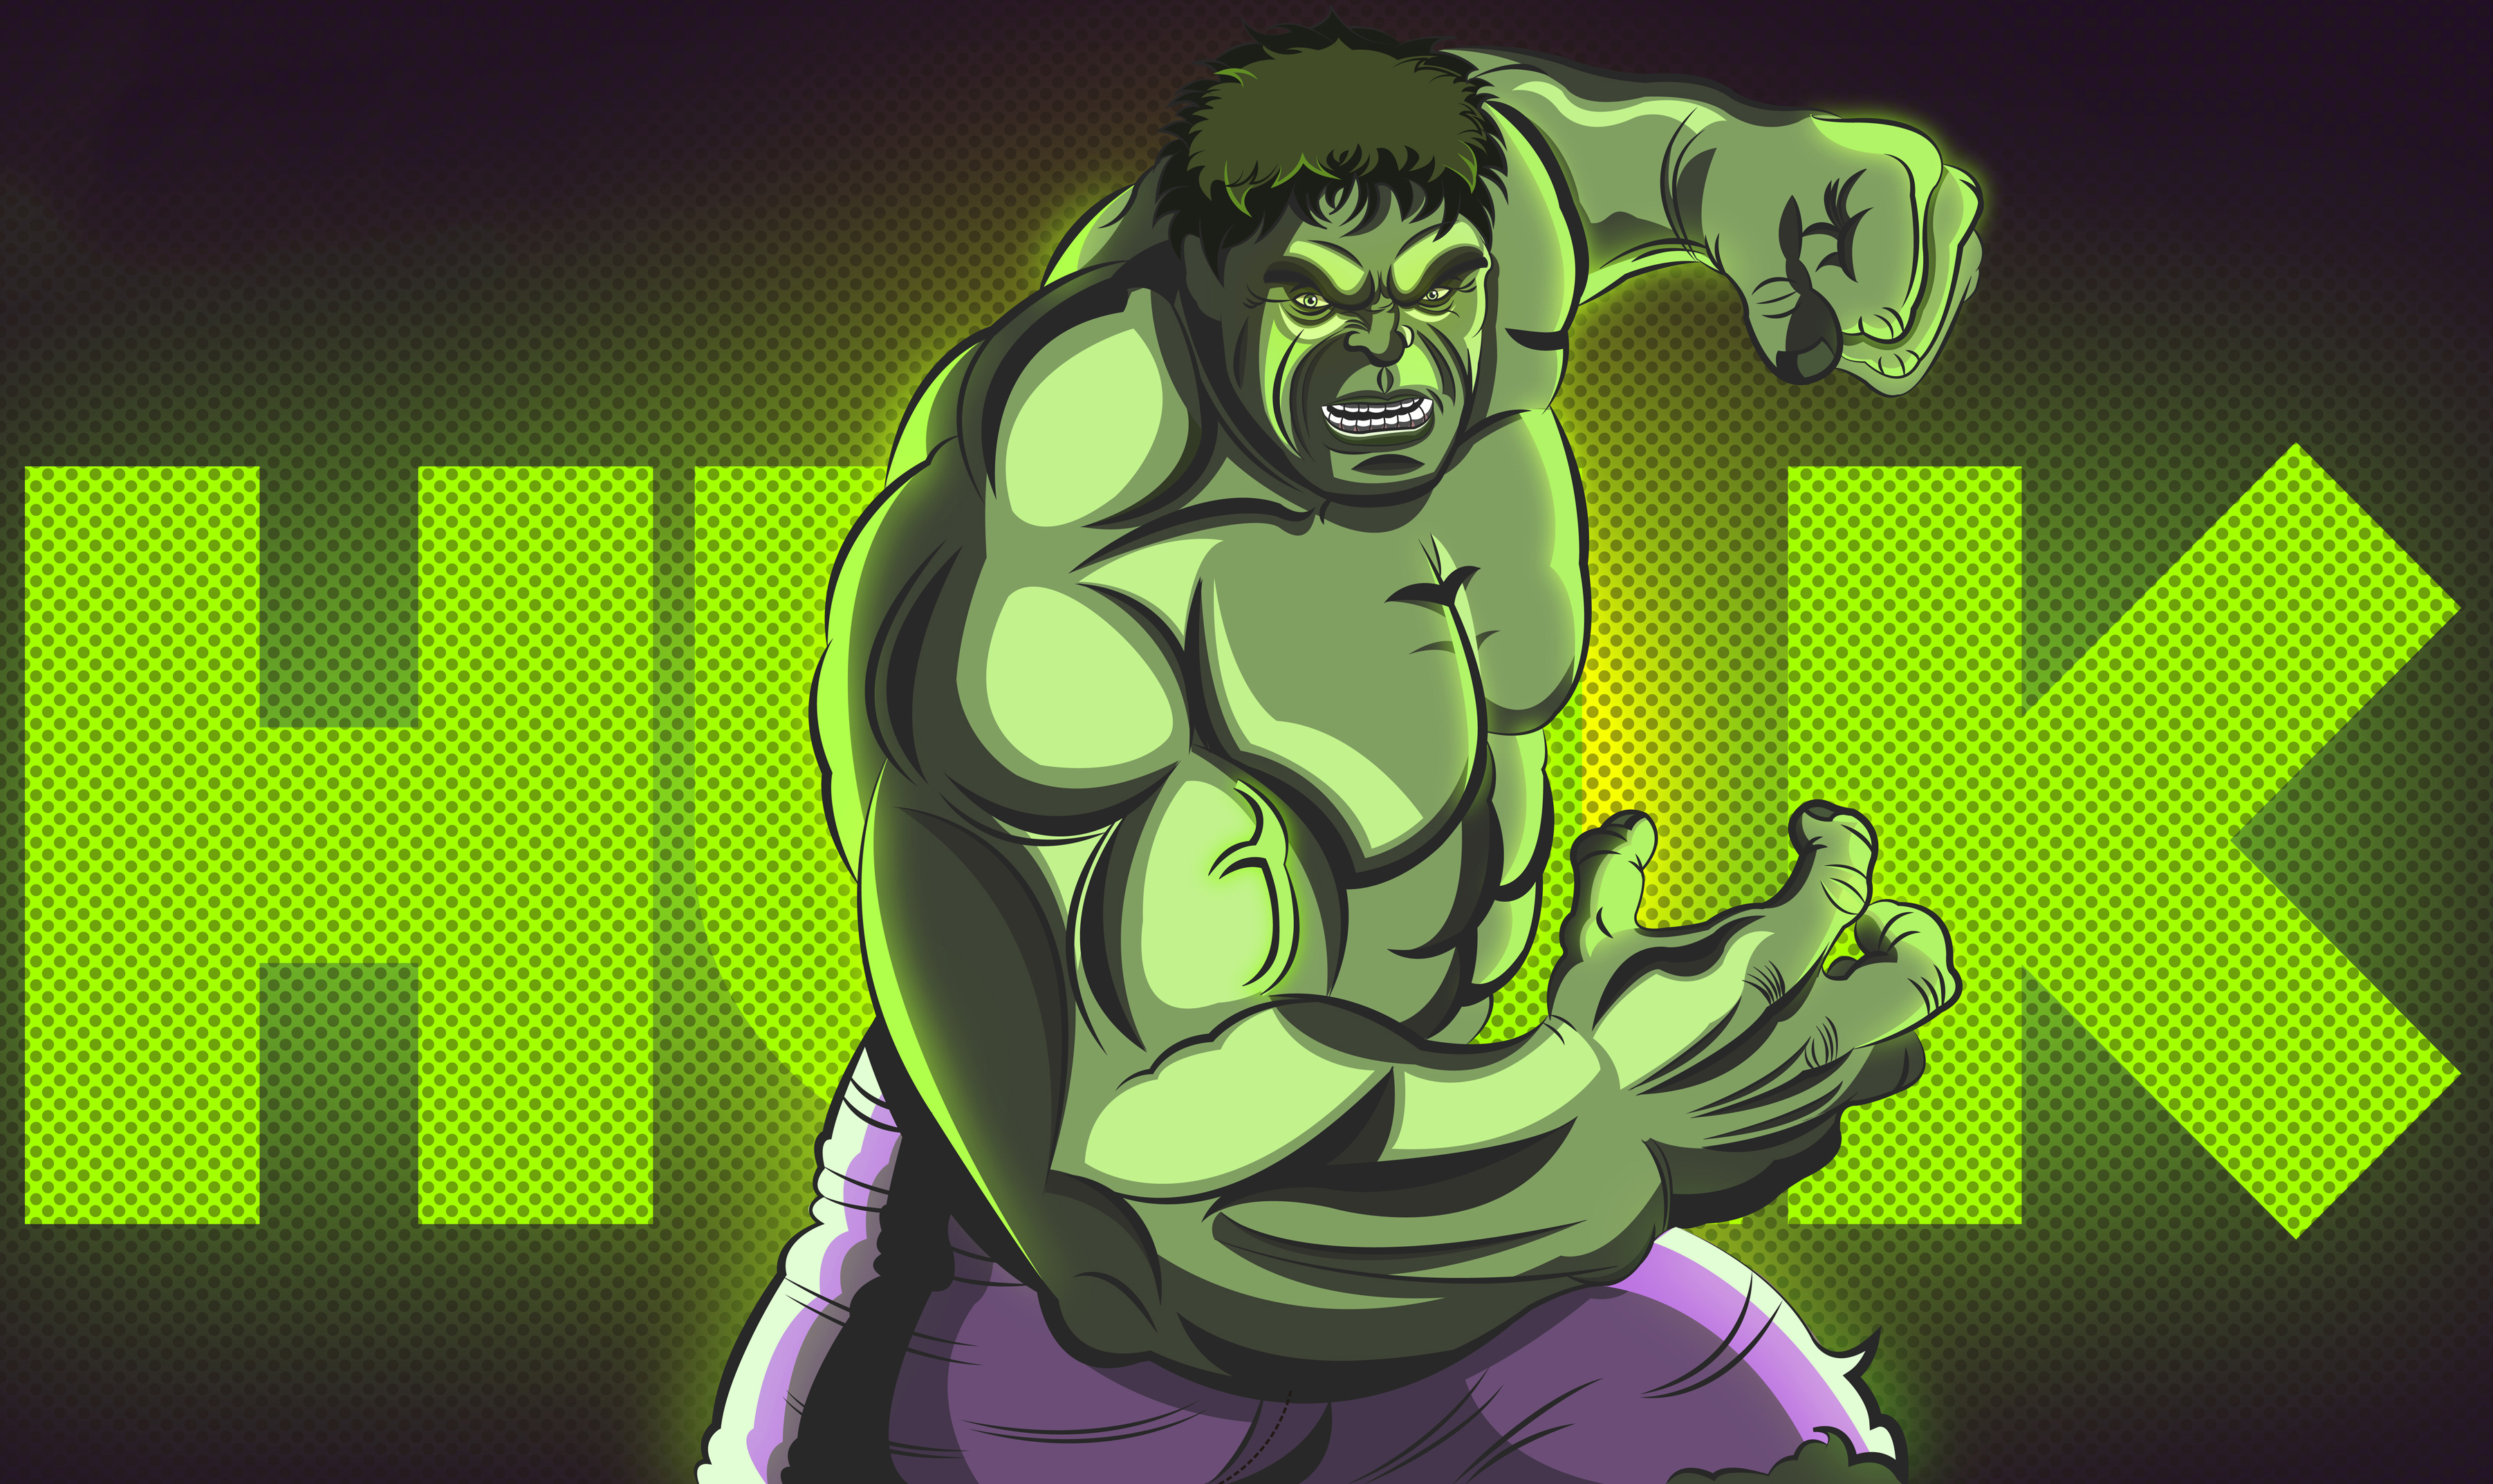 Hulk 4k Artworks, HD Superheroes, 4k Wallpapers, Images, Backgrounds